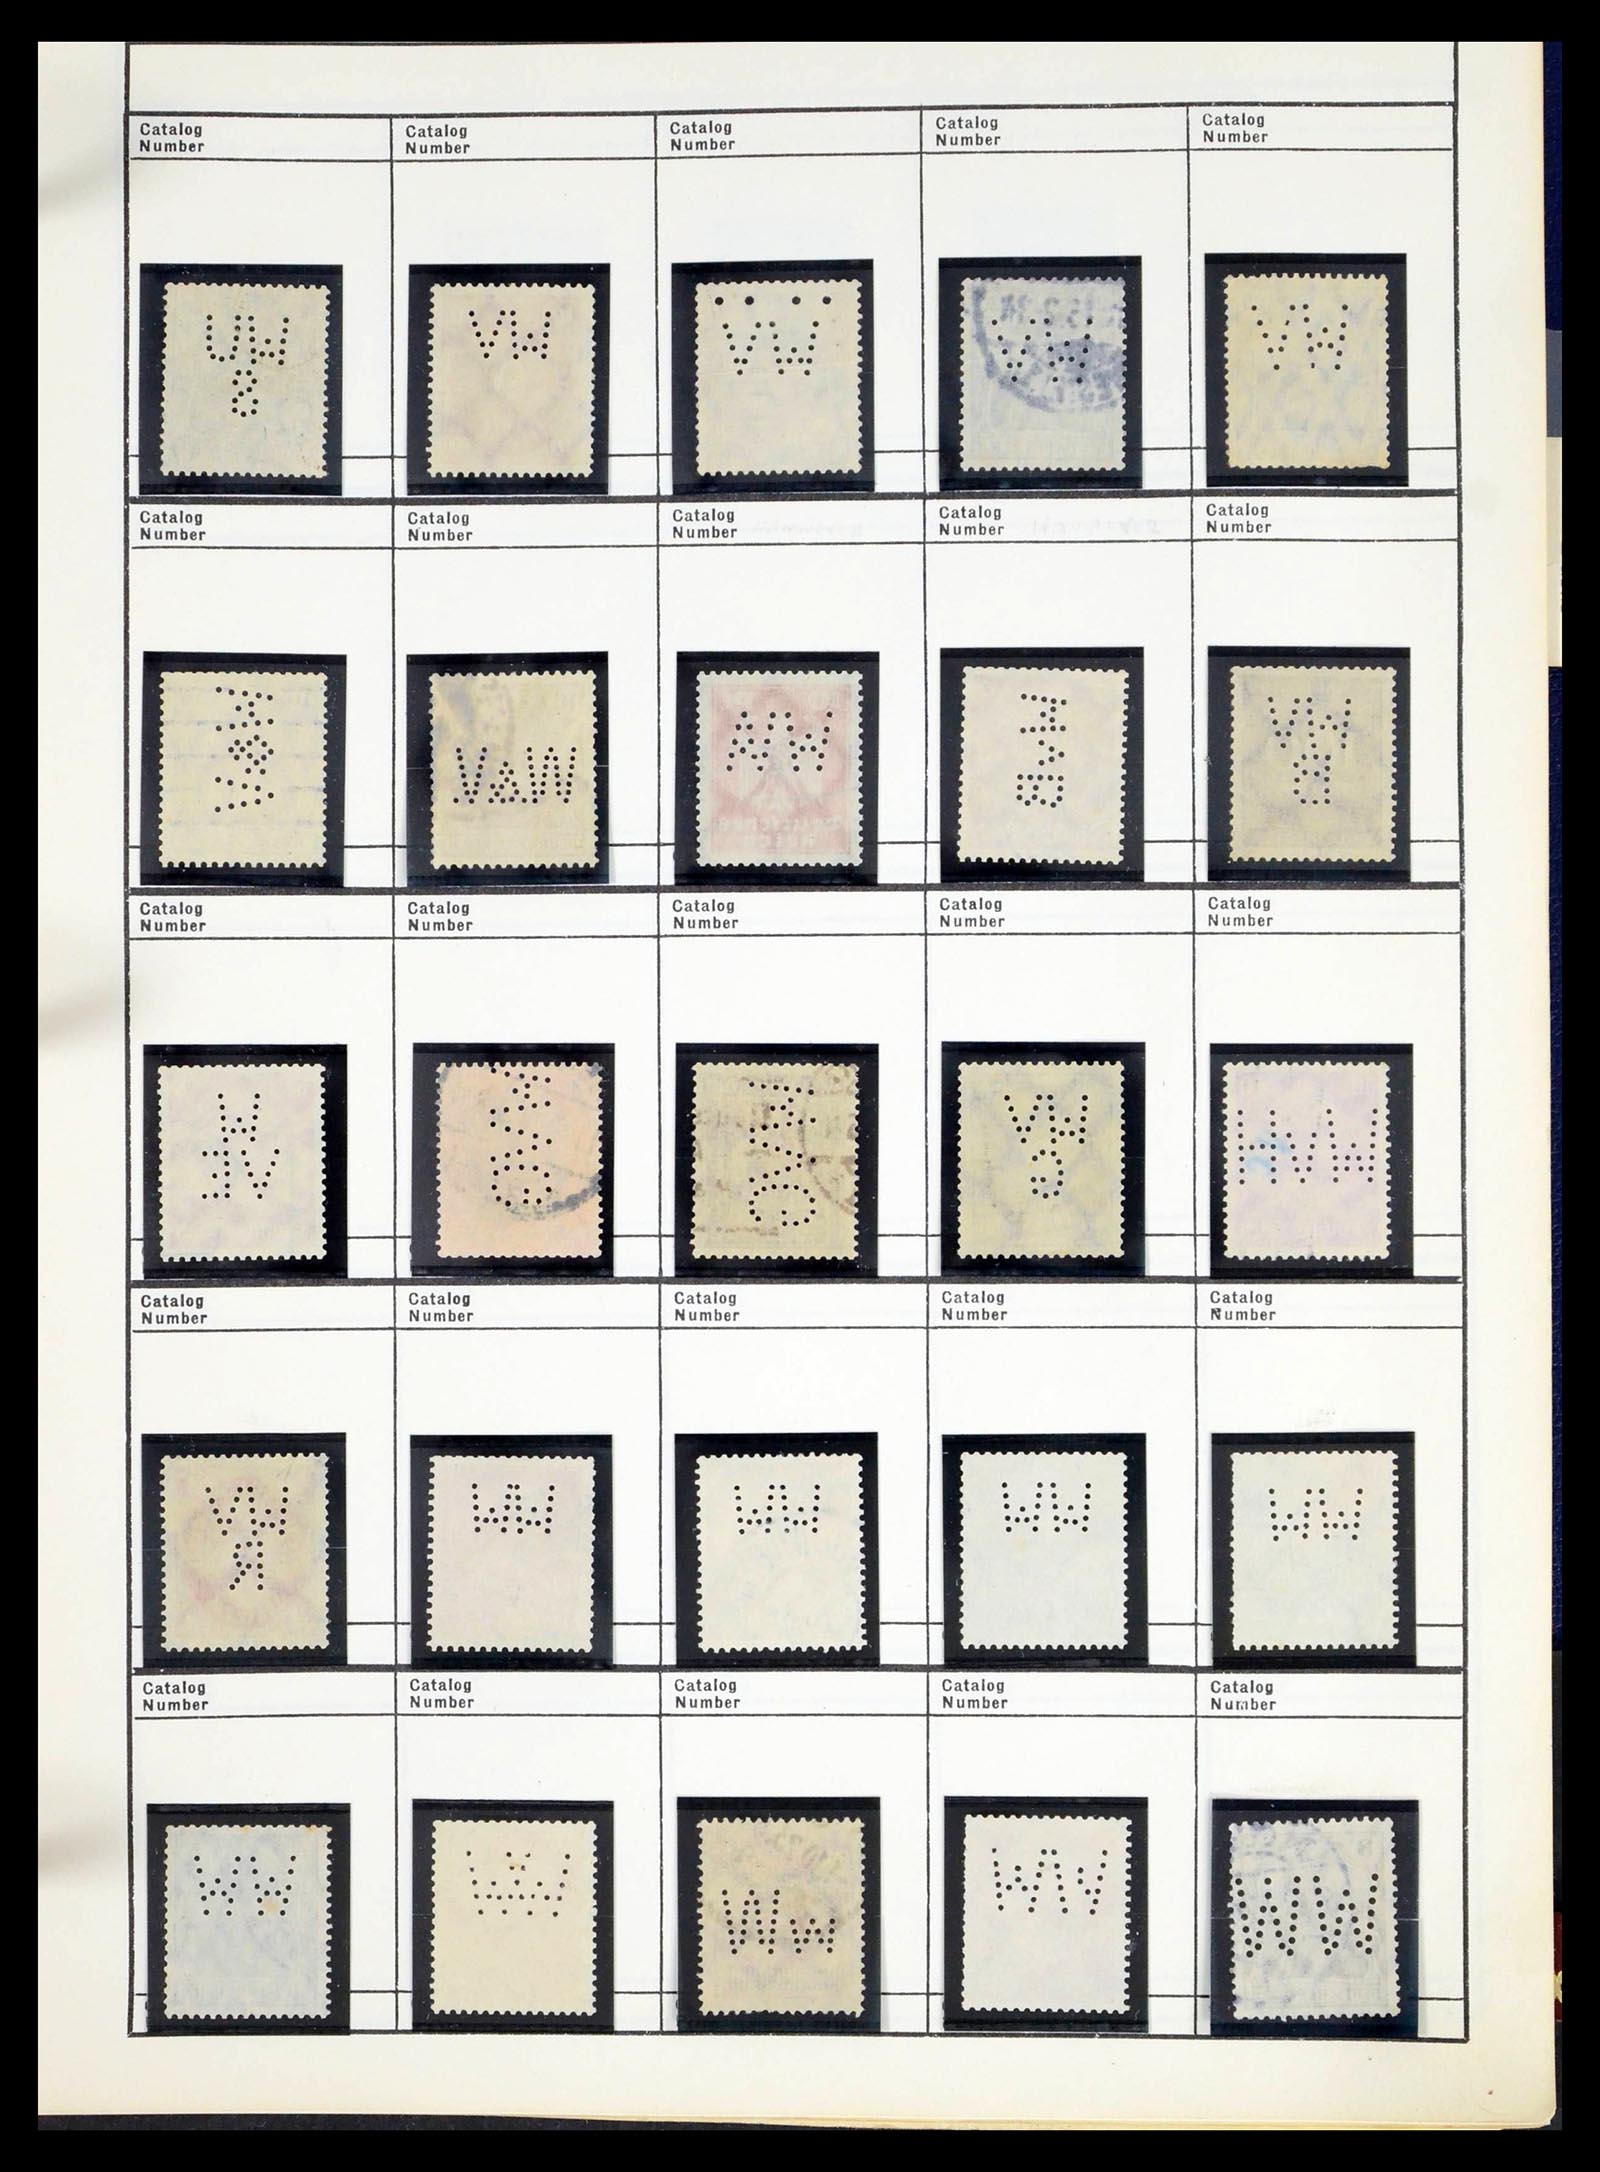 39480 0583 - Stamp collection 39480 German Reich perfins 1880-1955.